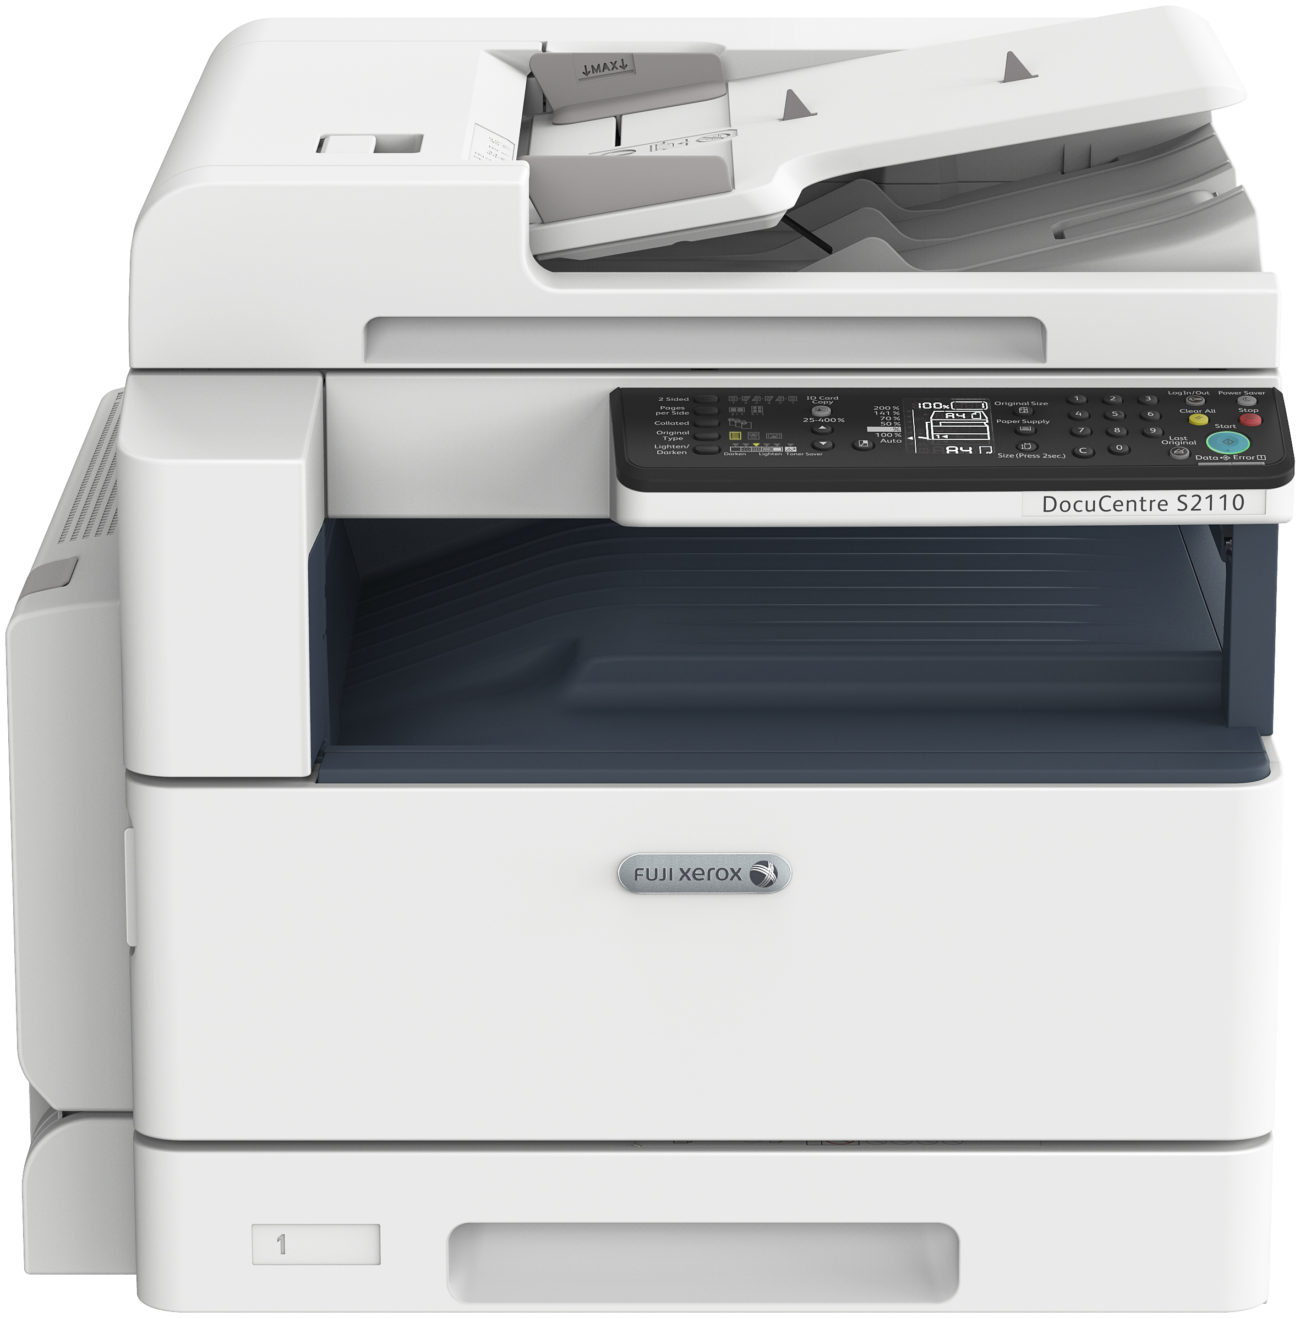 Sewa Mesin Fotocopy Fuji Xerox DCS 2110 cps